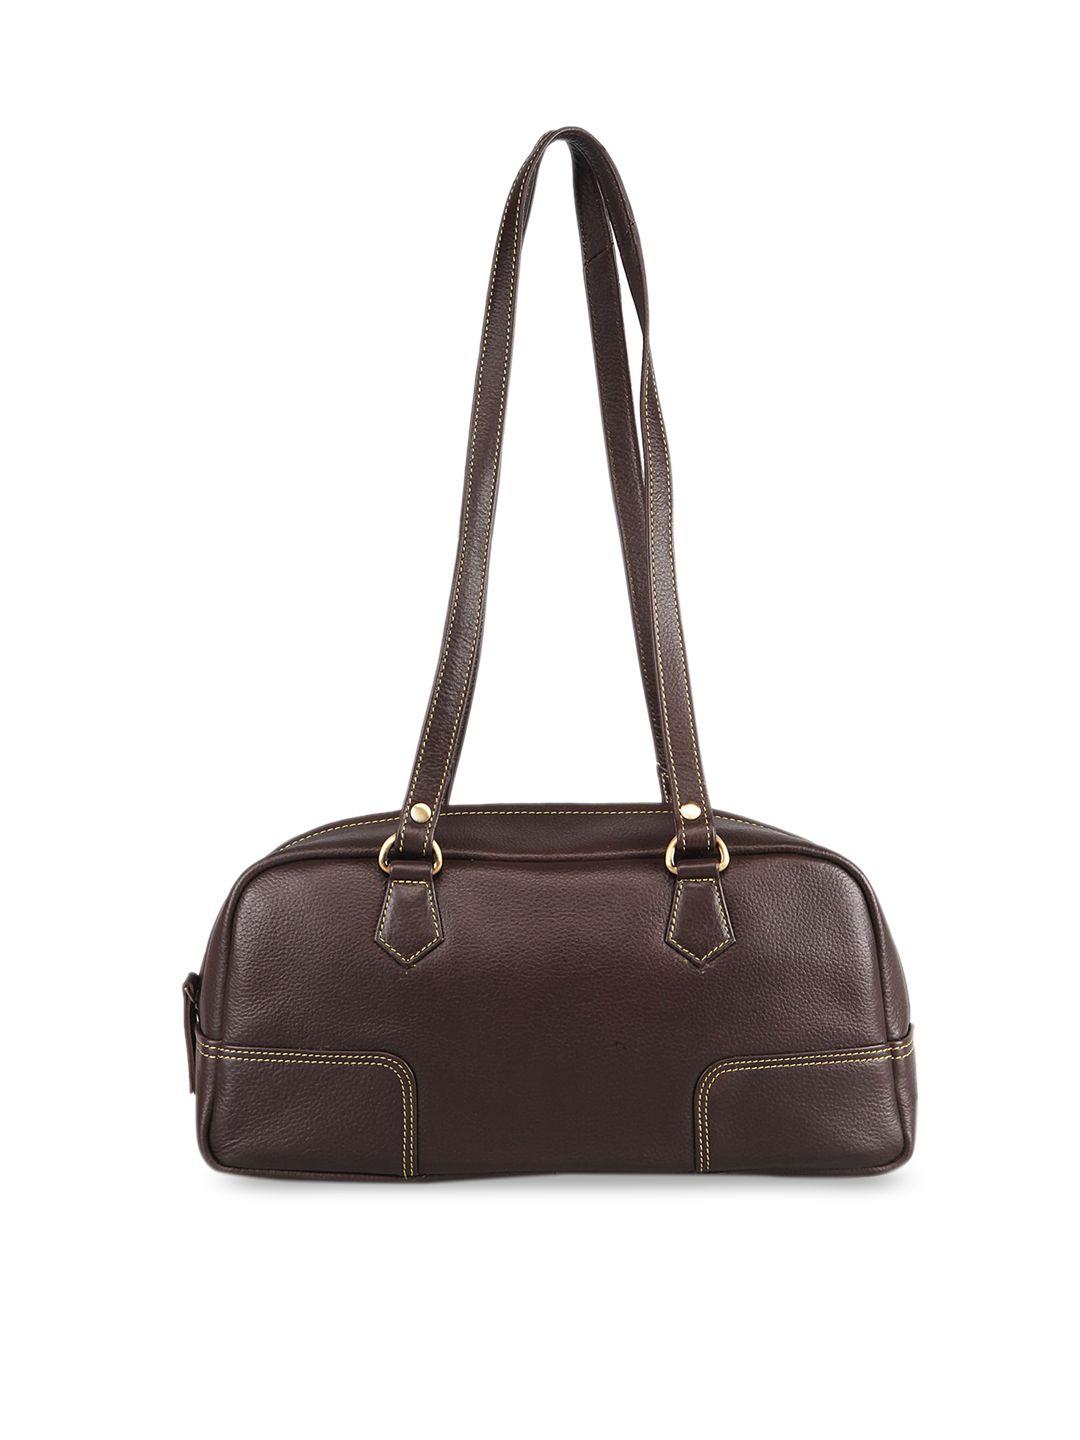 genwayne brown leather oversized structured shoulder bag